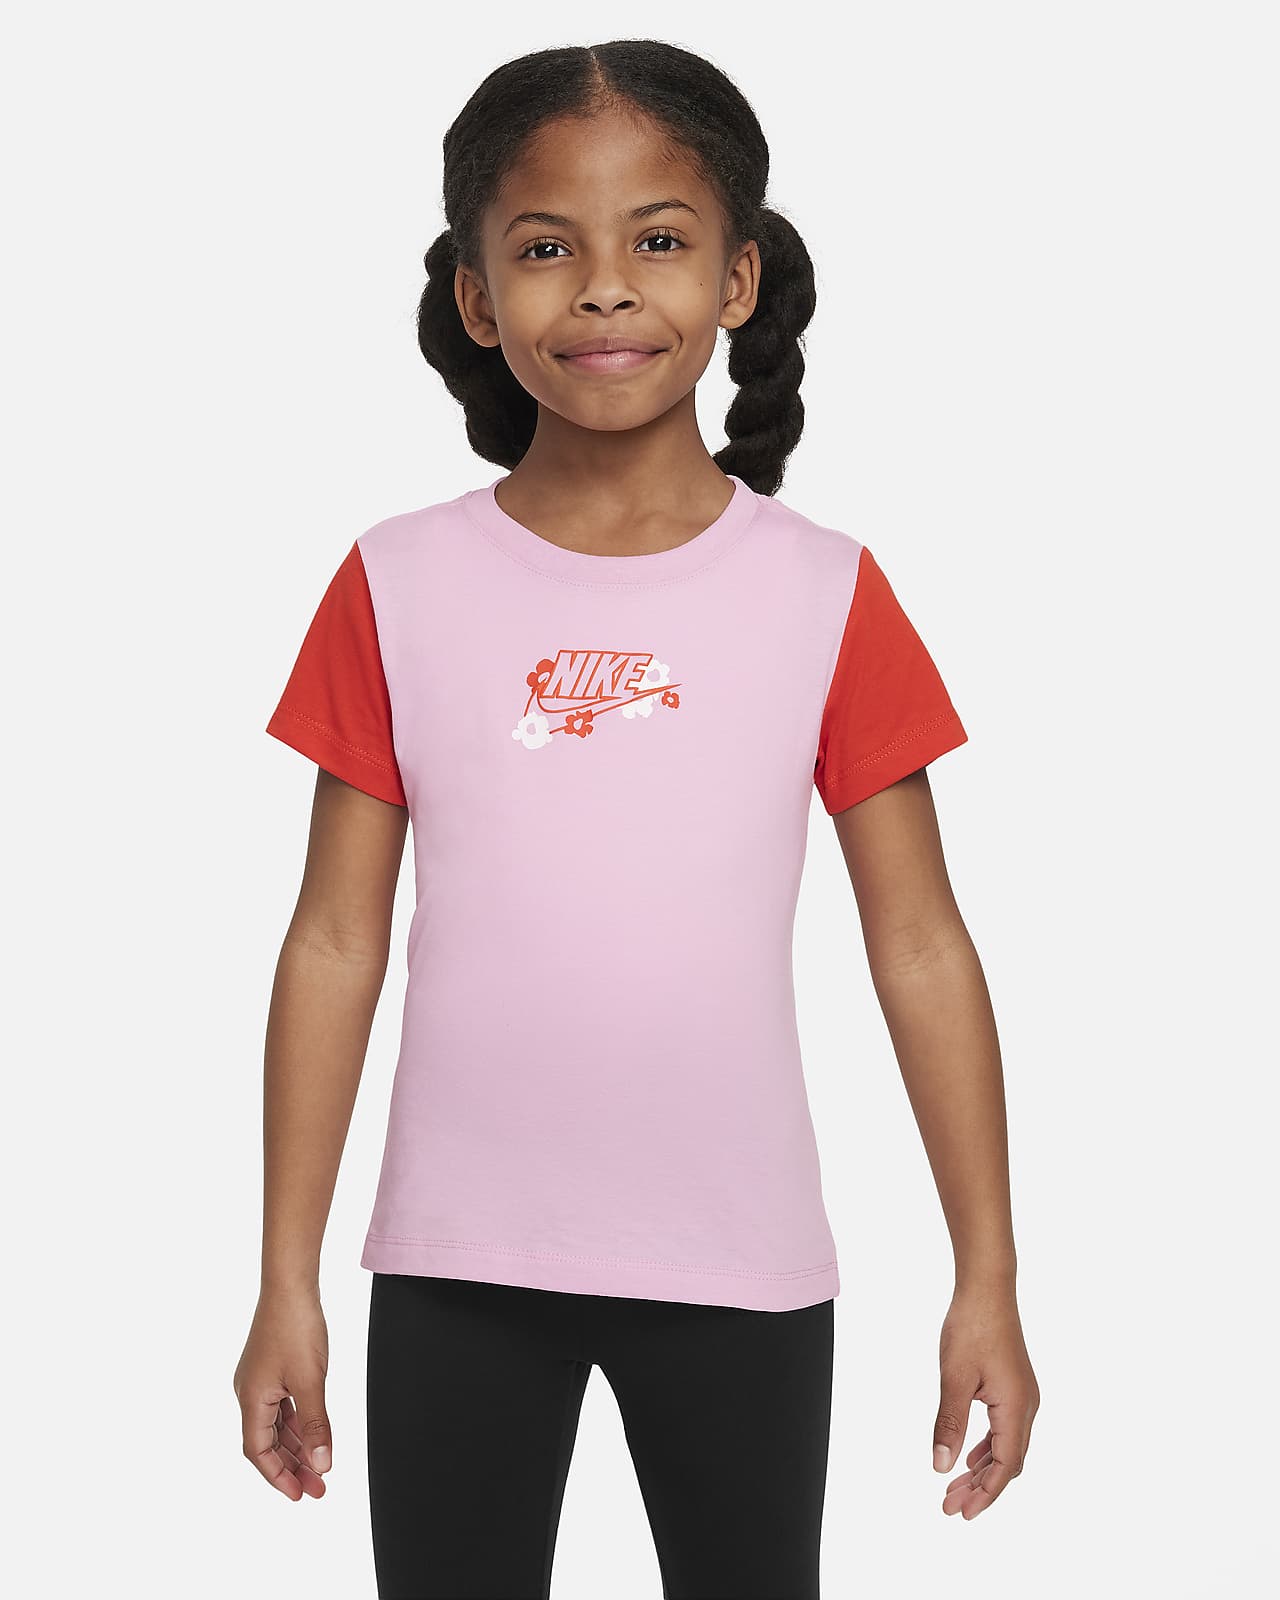 T-shirt à motif Nike « Your Move » pour enfant